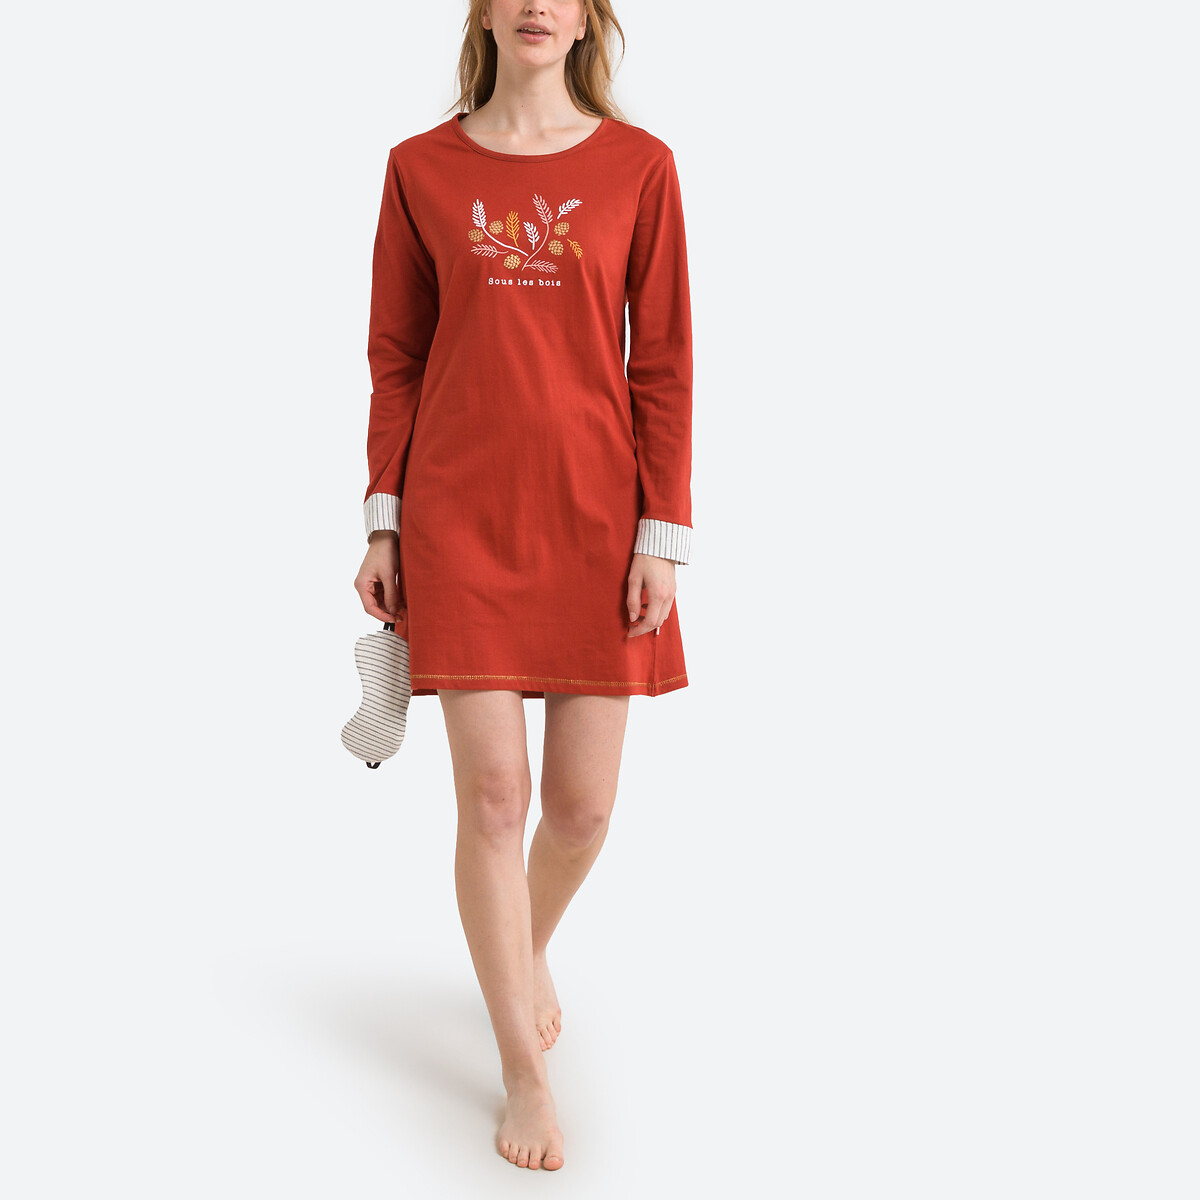 Рубашка С длинными рукавами из хлопка Pigne XL красный LaRedoute, размер XL - фото 5